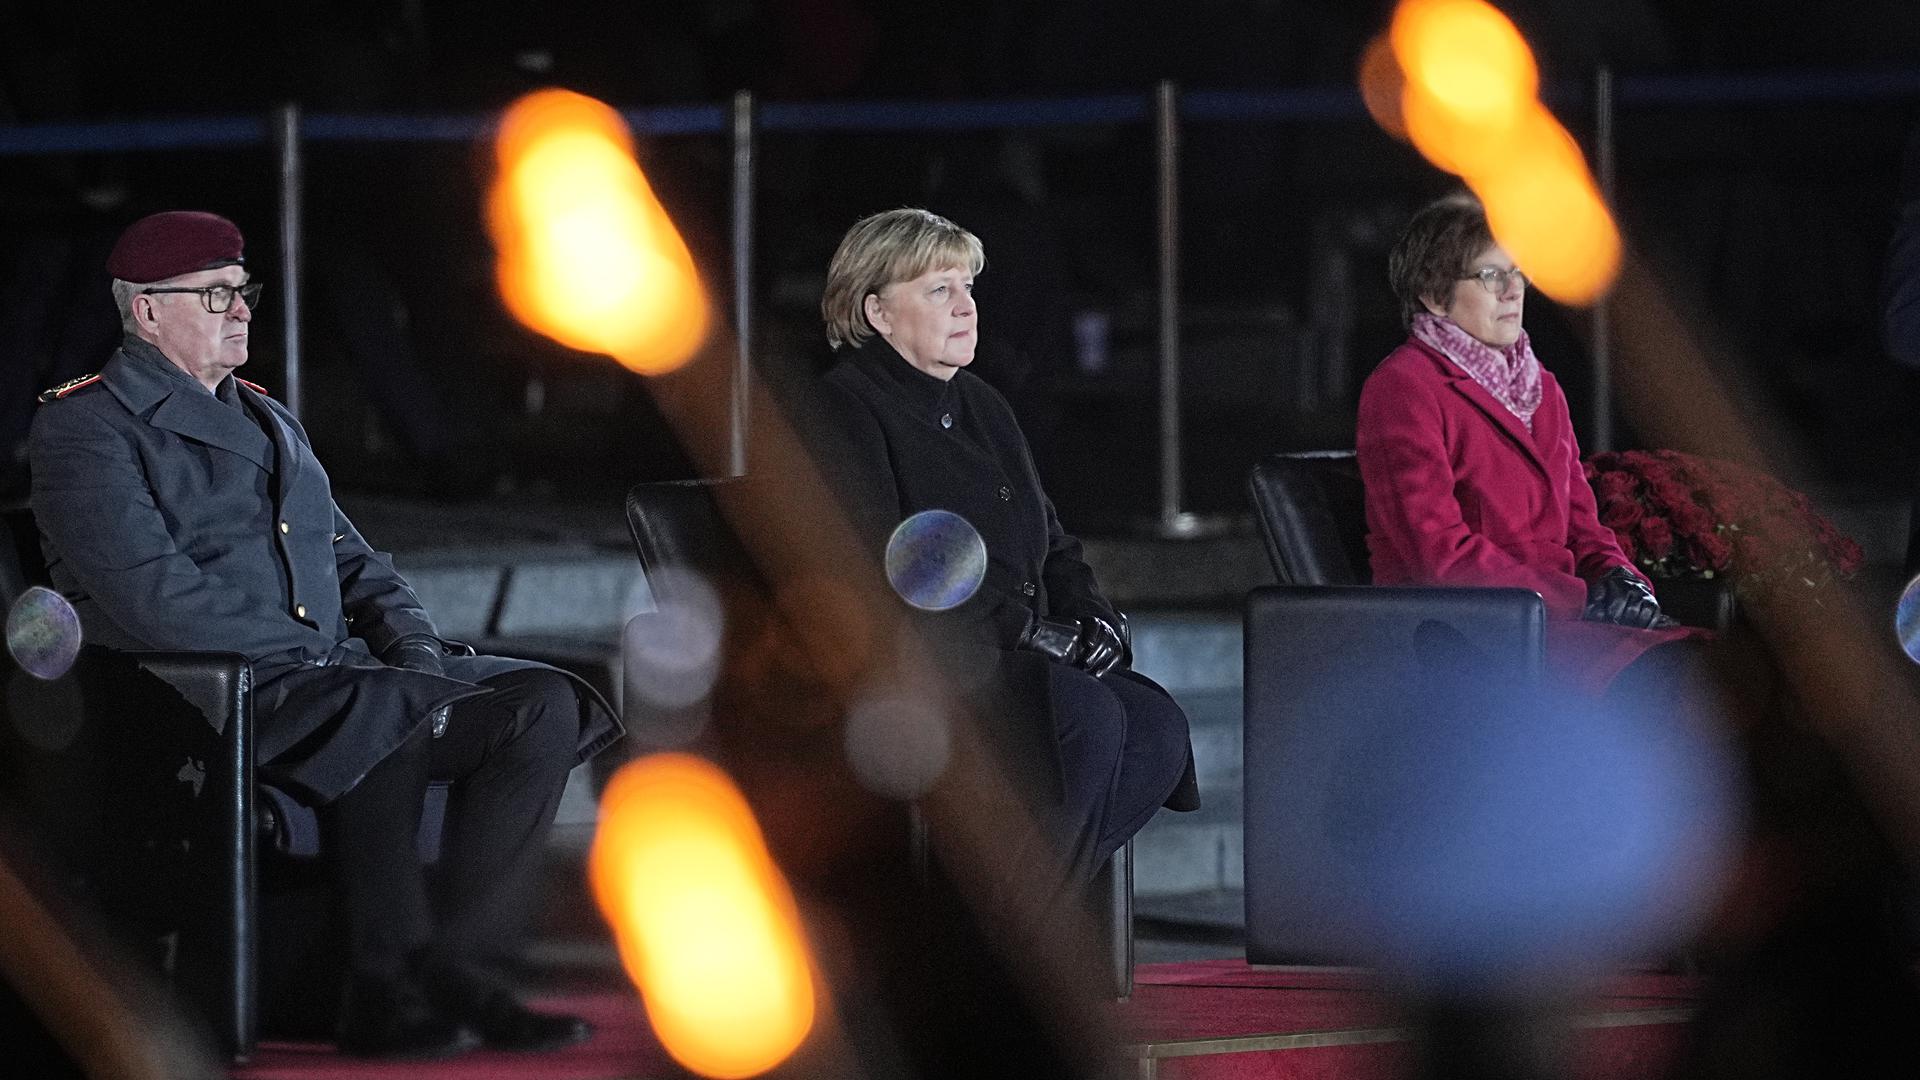 Bundeskanzlerin Angela Merkel sitzt bei ihrer Verabschiedung durch die Bundeswehr zwischen dem Generalinspekteur der Bundeswehr, General Eberhard Zorn, und der Verteidigungsministerin Annegret Kramp-Karrenbauer.